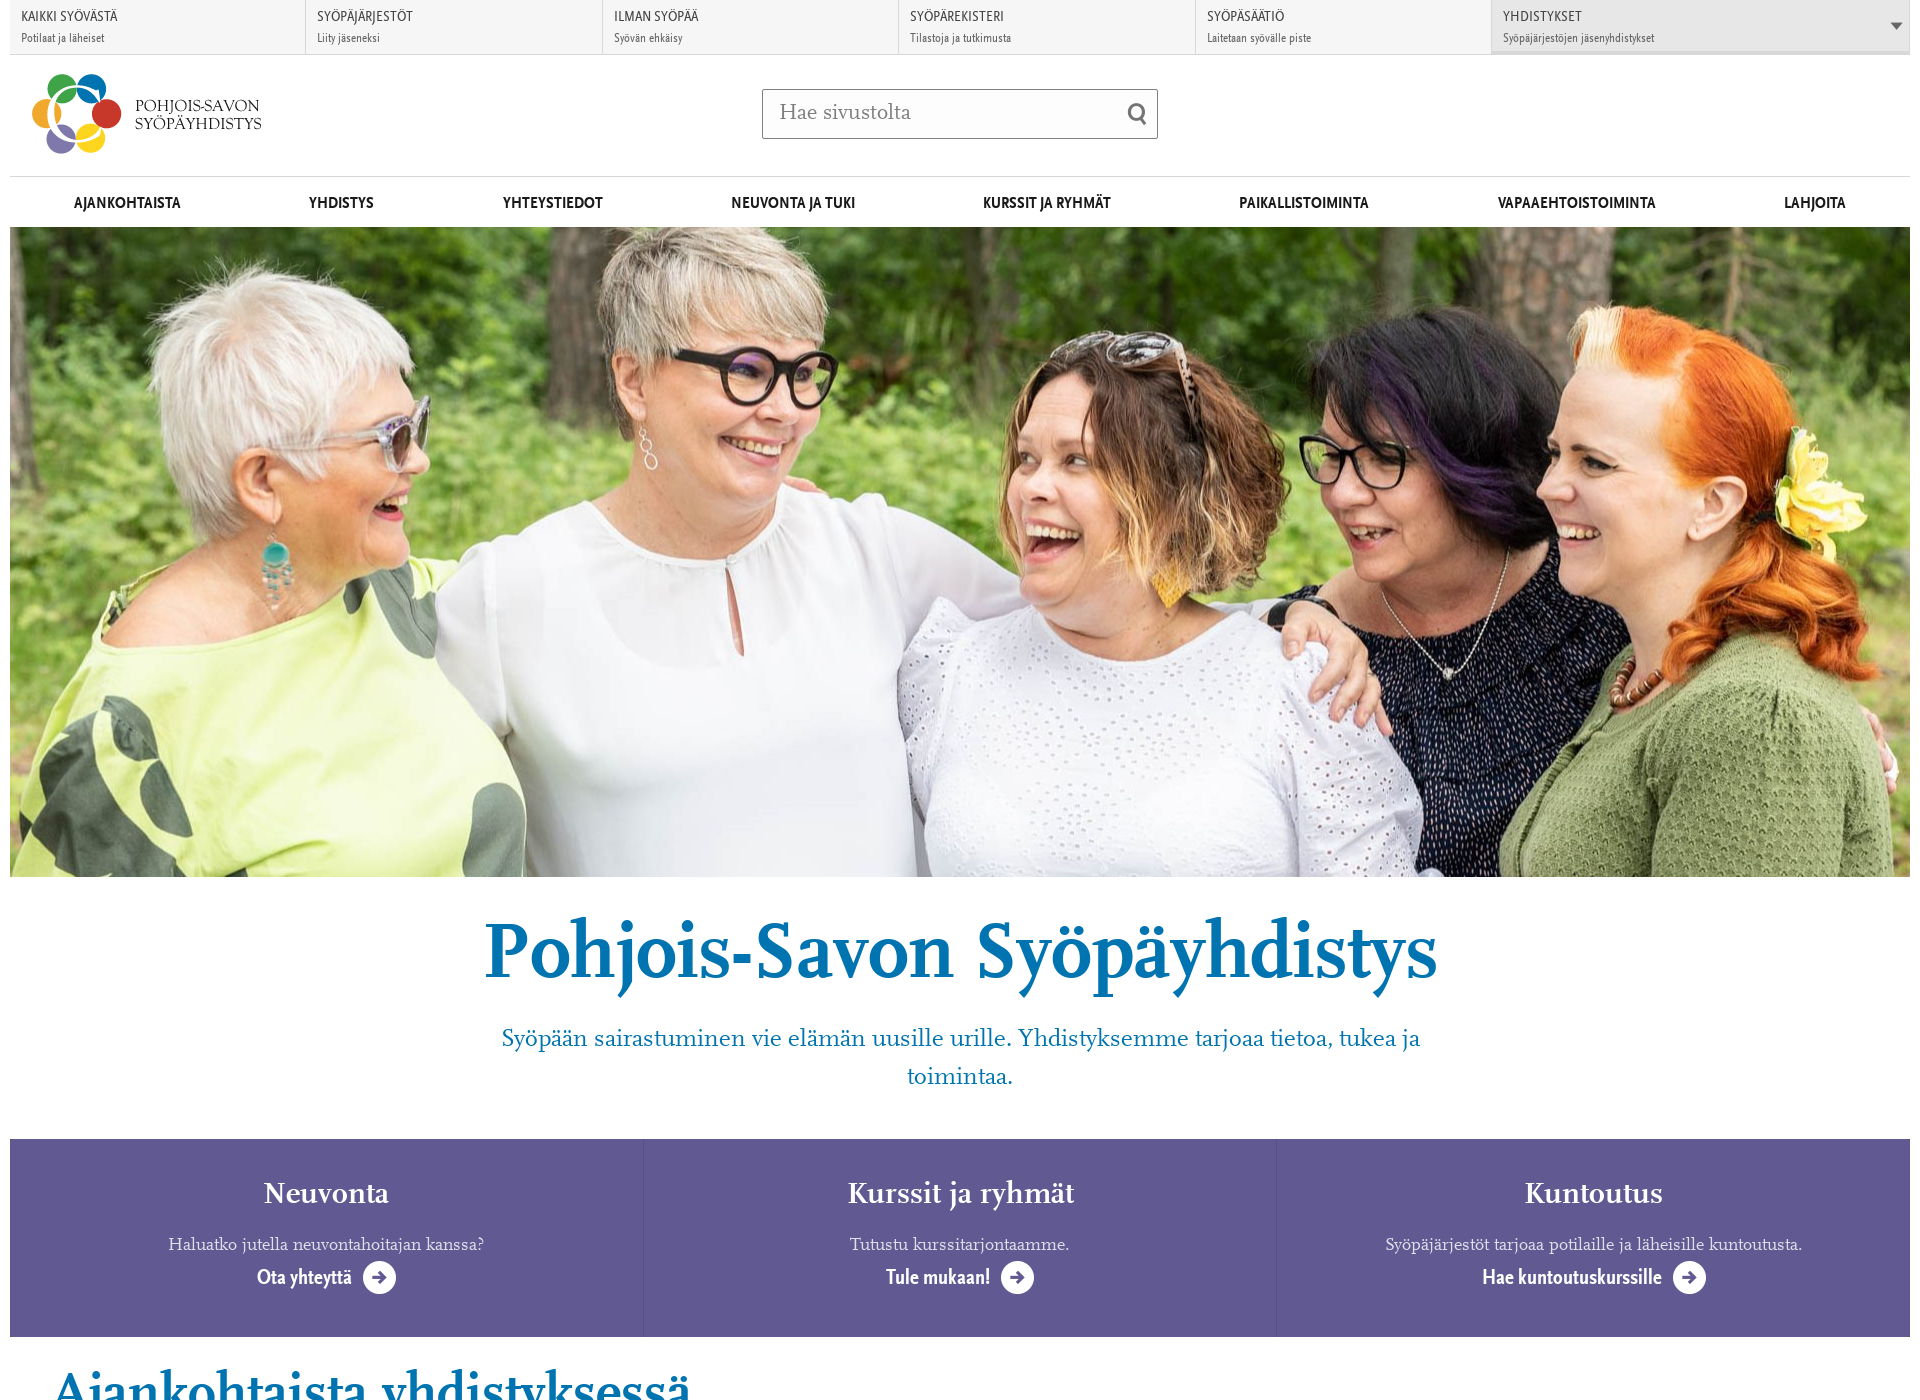 Näyttökuva pohjois-savonsyopayhdistys.fi